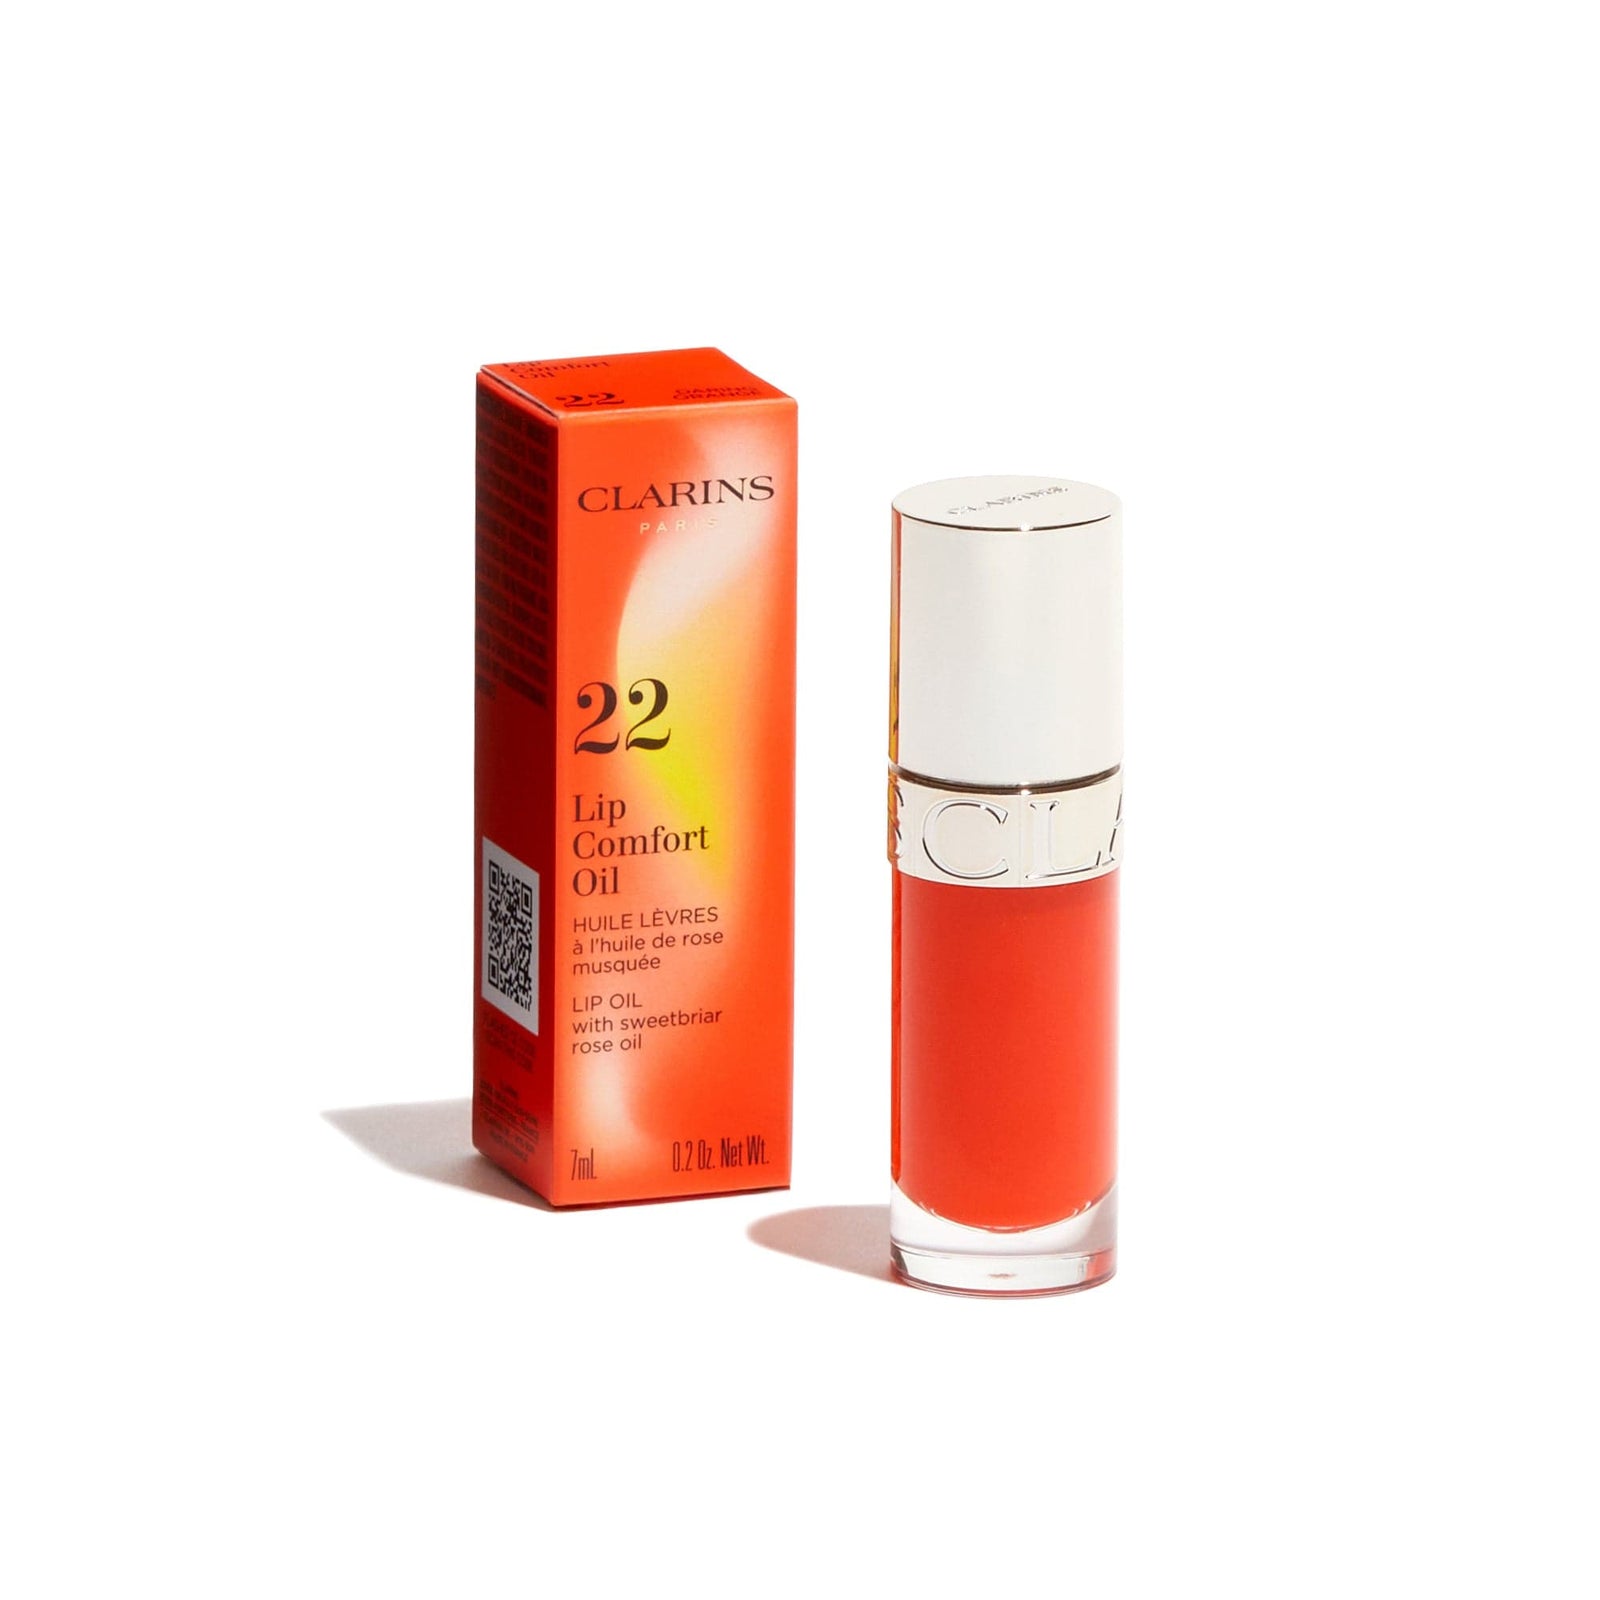 Clarins Lip Comfort Oil 22 Orange 7ml